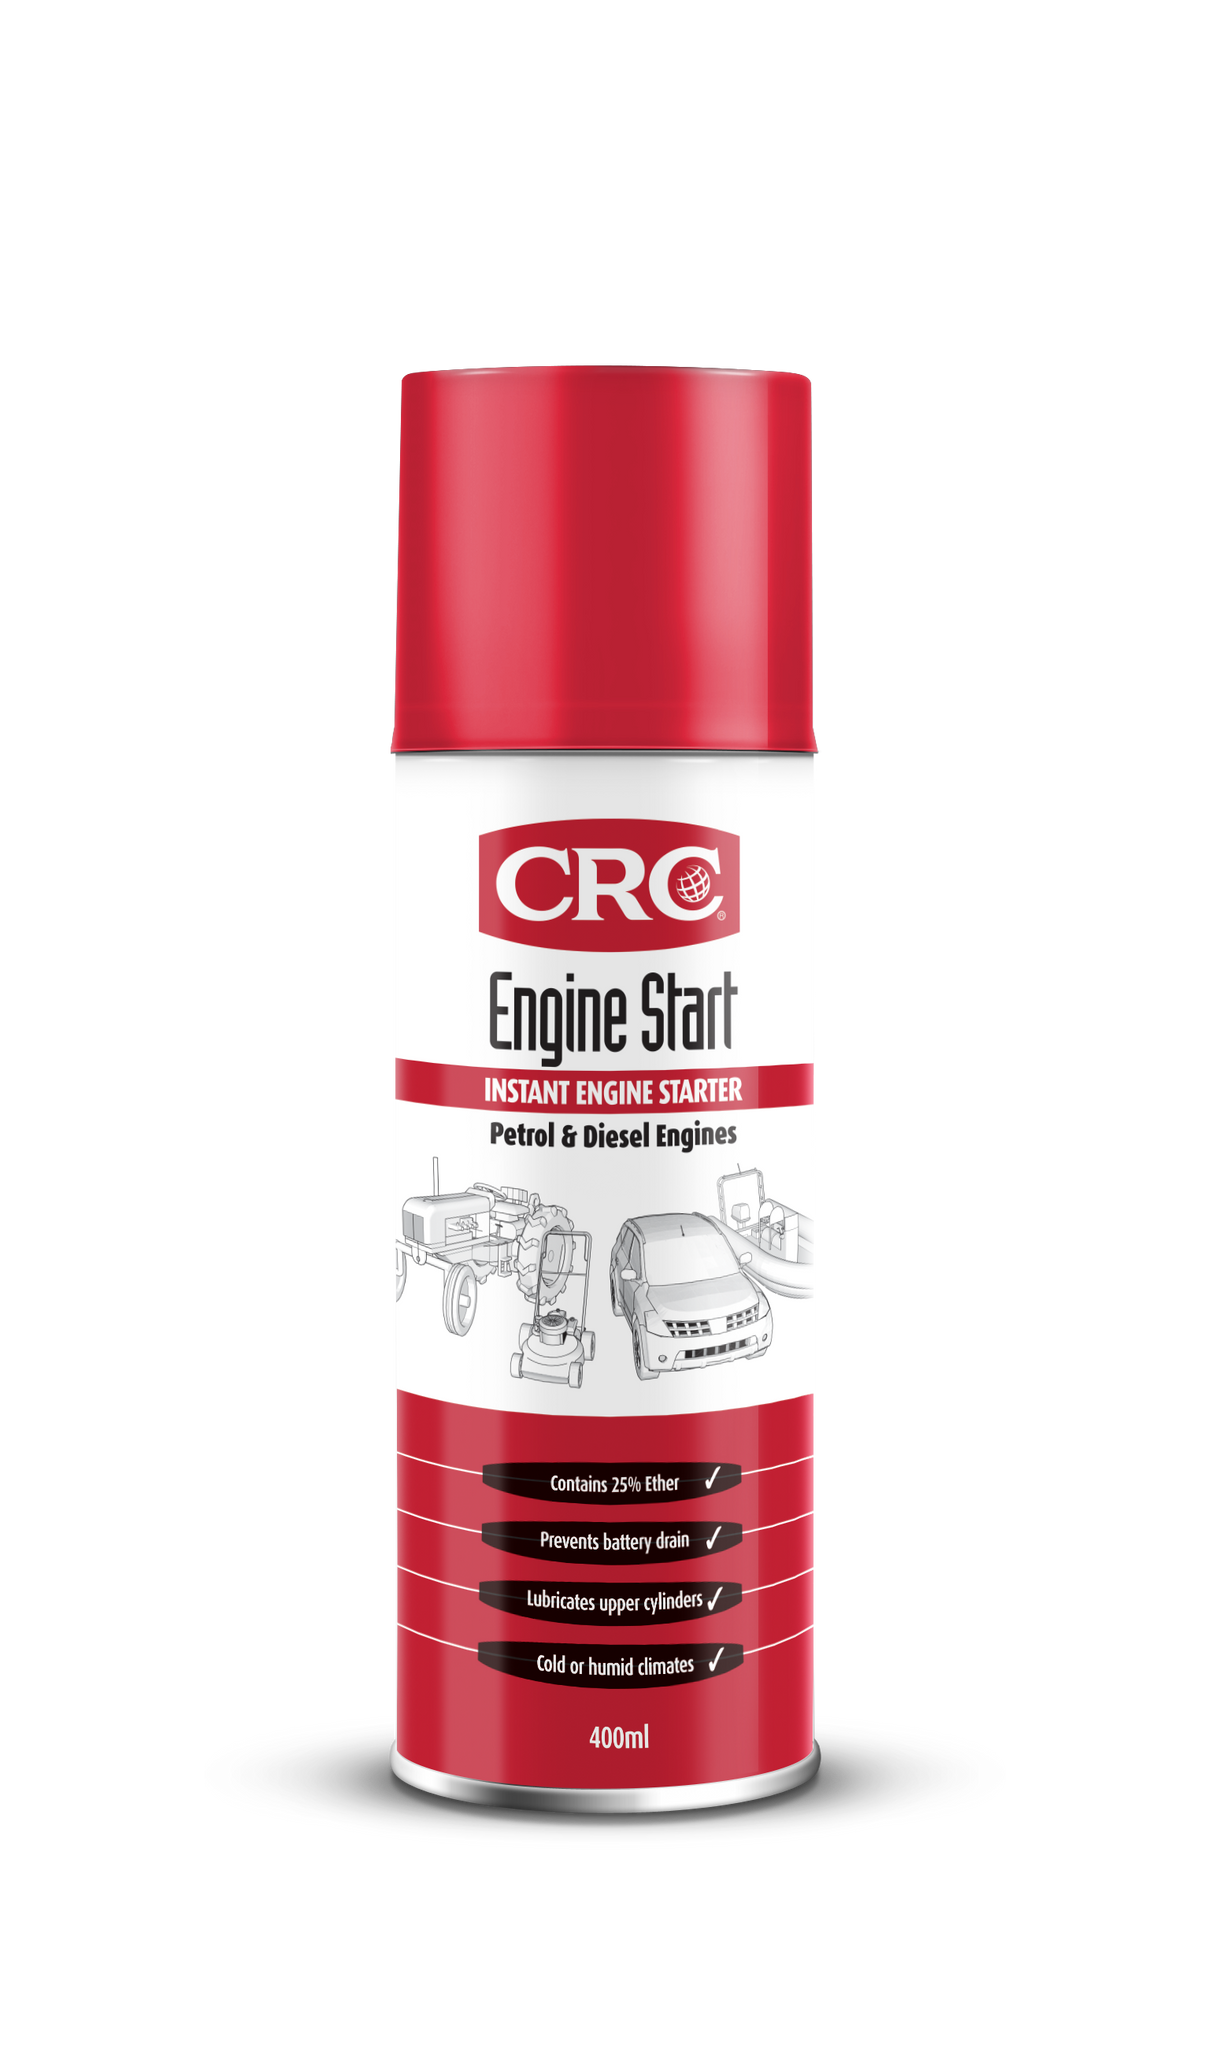 CRC Engine Start